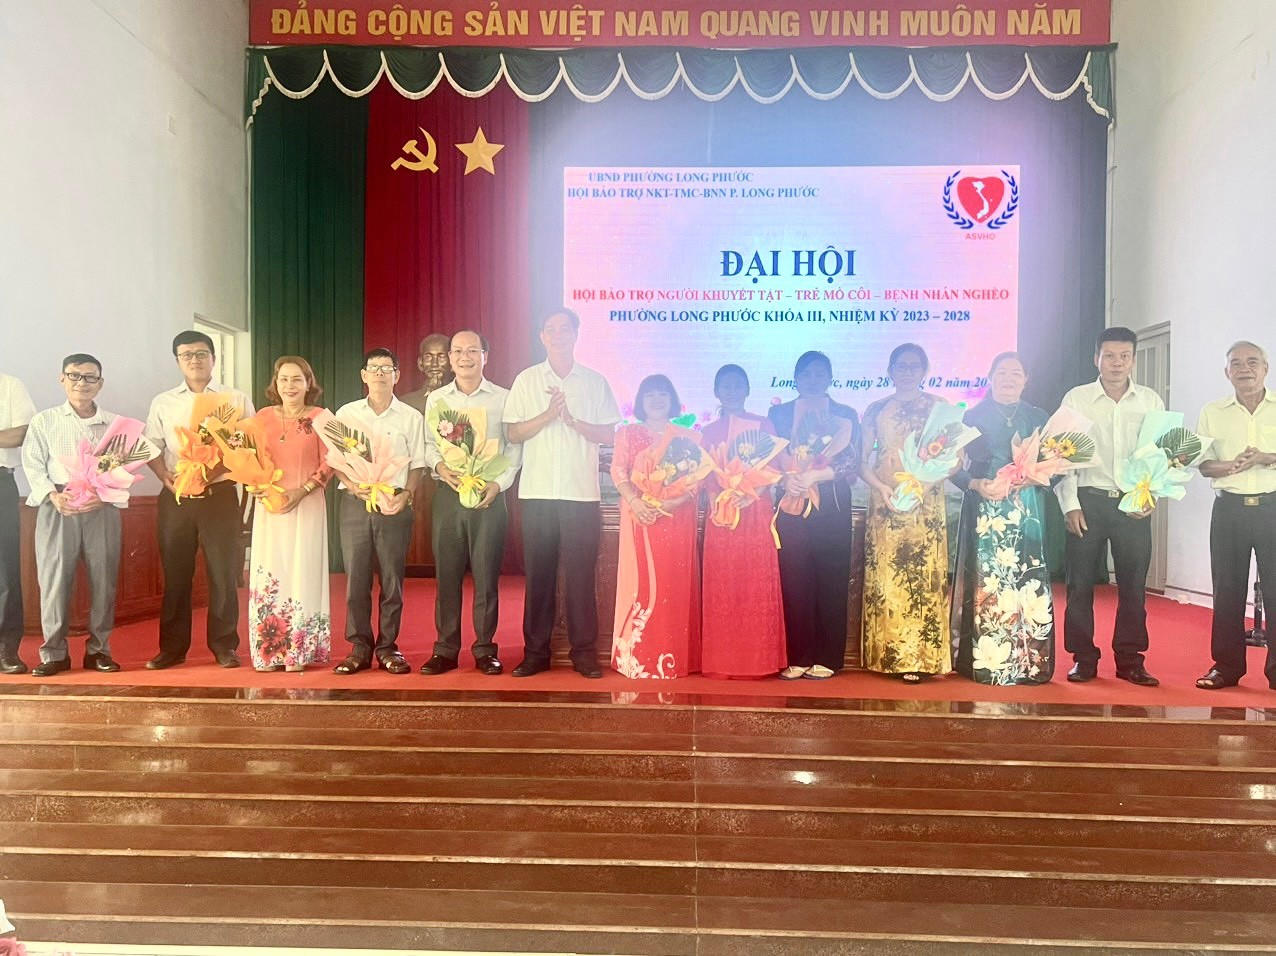 Long Phước tổ chức Đại hội Hội Bảo trợ Người khuyết tật – Trả mồ côi – Bệnh nhân nghèo khóa III, nhiệm kỳ 2023 - 2028